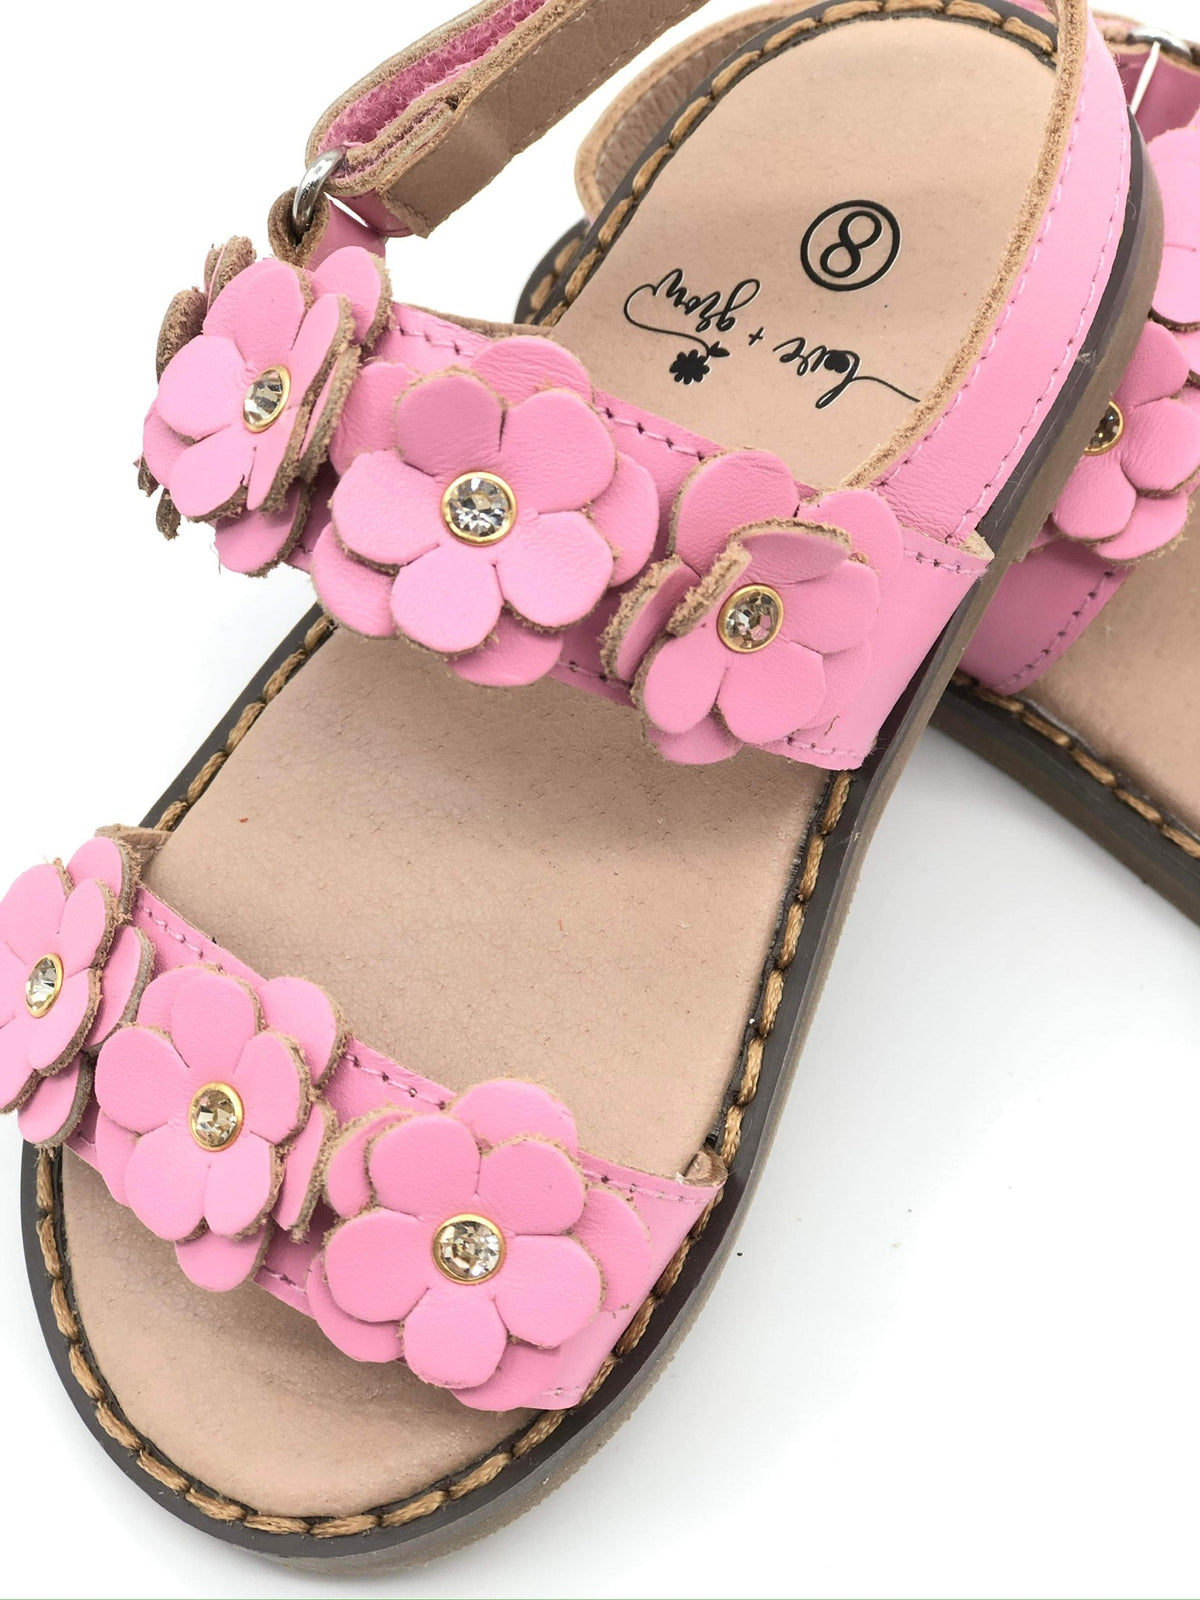 Flower Sandals - Pink